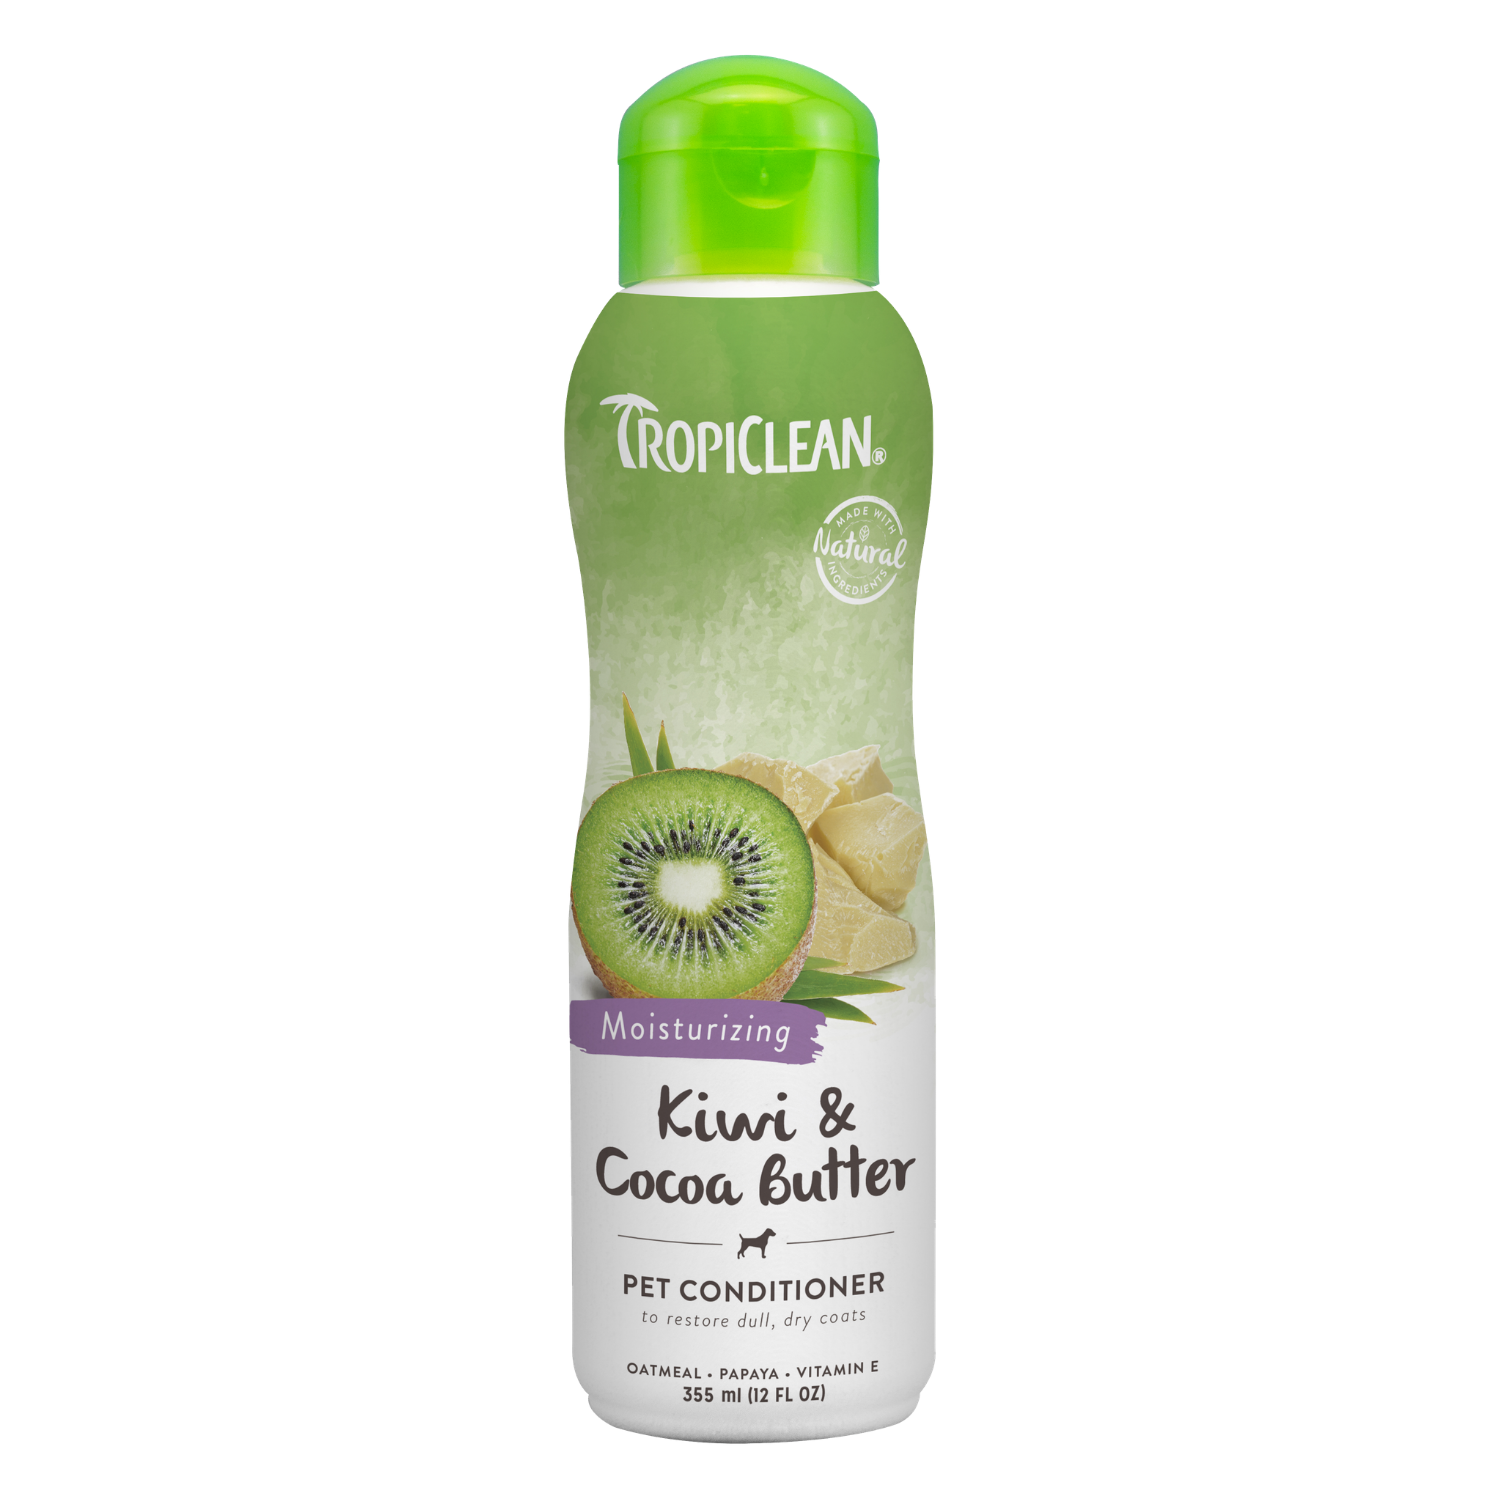 Tropiclean Kiwi & Cocoa Butter Pet Conditioner (Moisturising) - 355ml / 3.79L